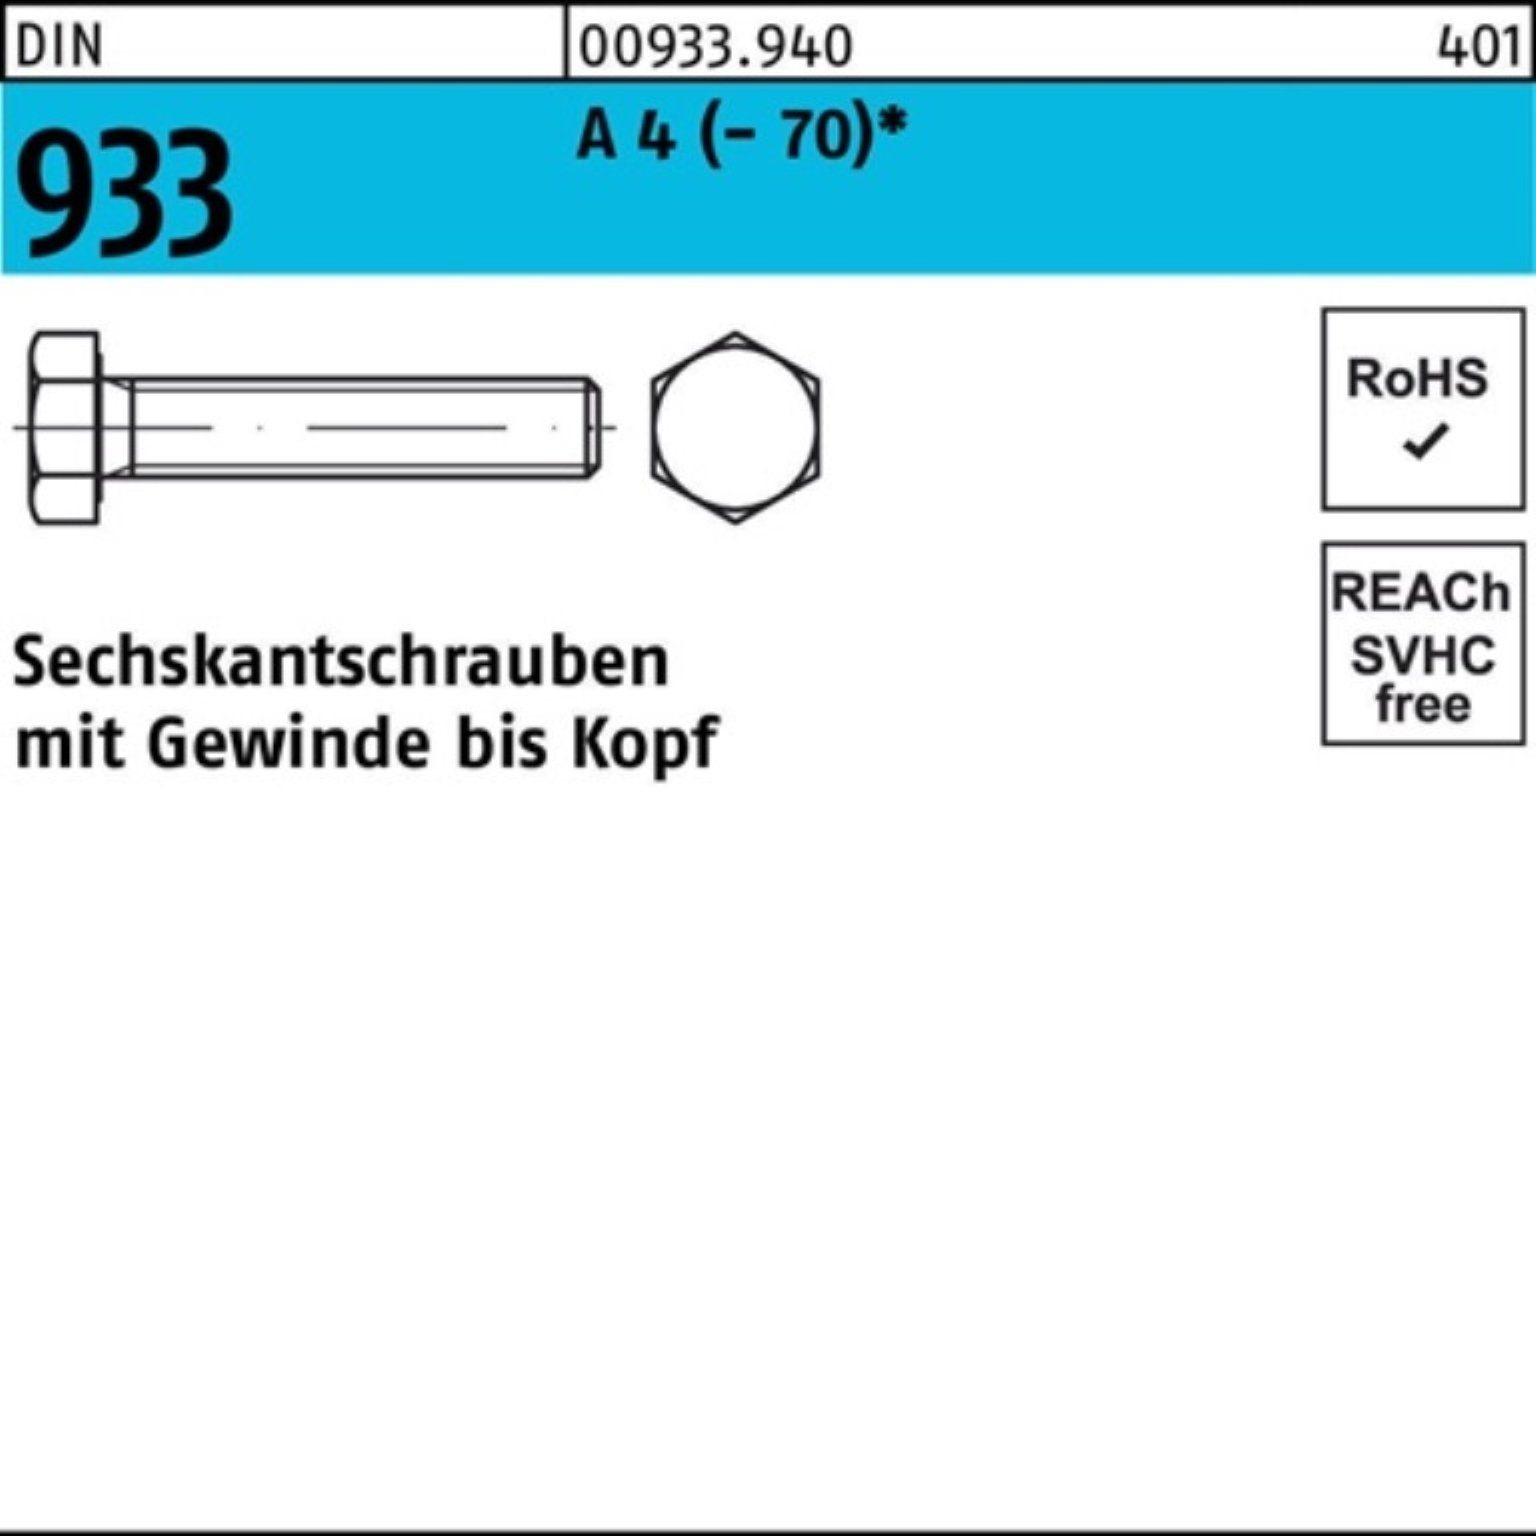 Reyher Sechskantschraube 100er Pack 100 VG D M18x Stück DIN Sechskantschraube 1 4 A (70) 933